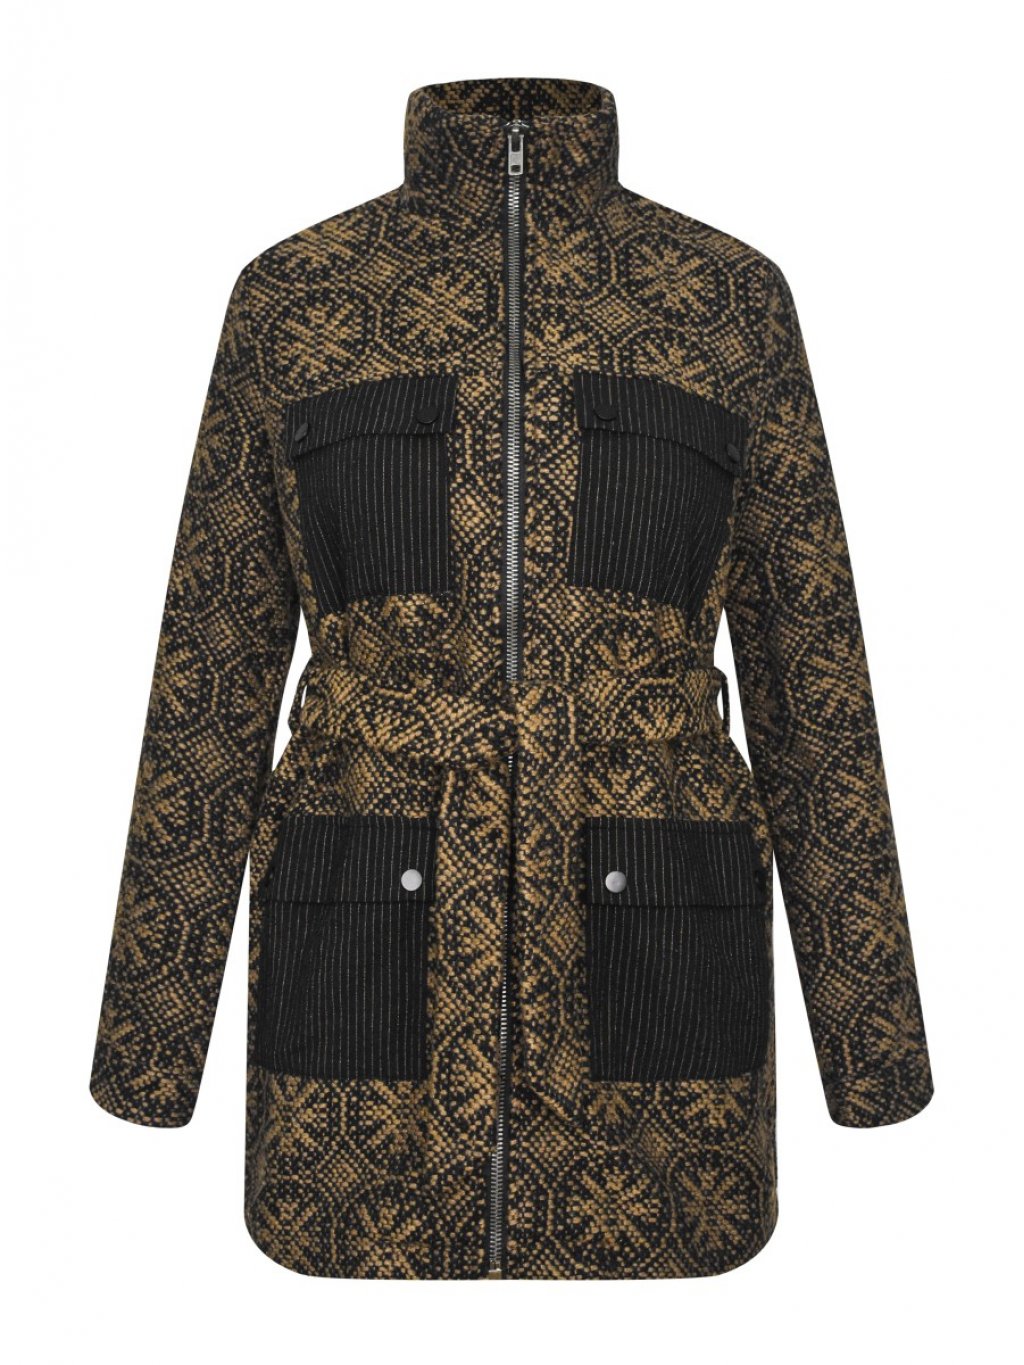 Kabát Nu Denmark 7733-35 černý s karamelovým vzorem